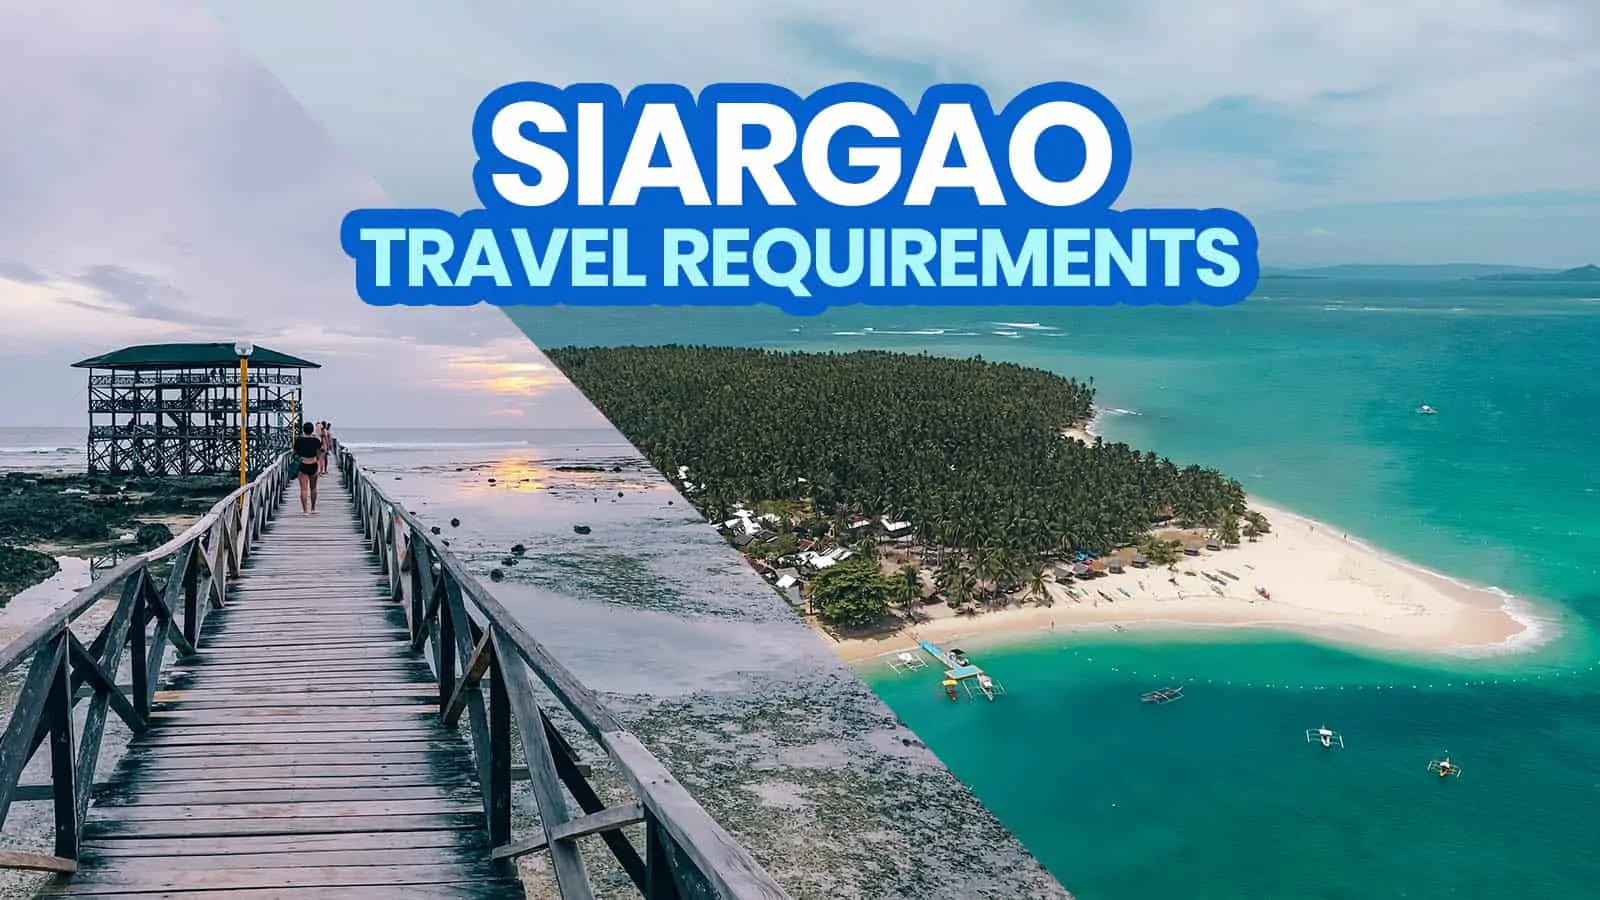 Siargao旅行要求和新的普通政策